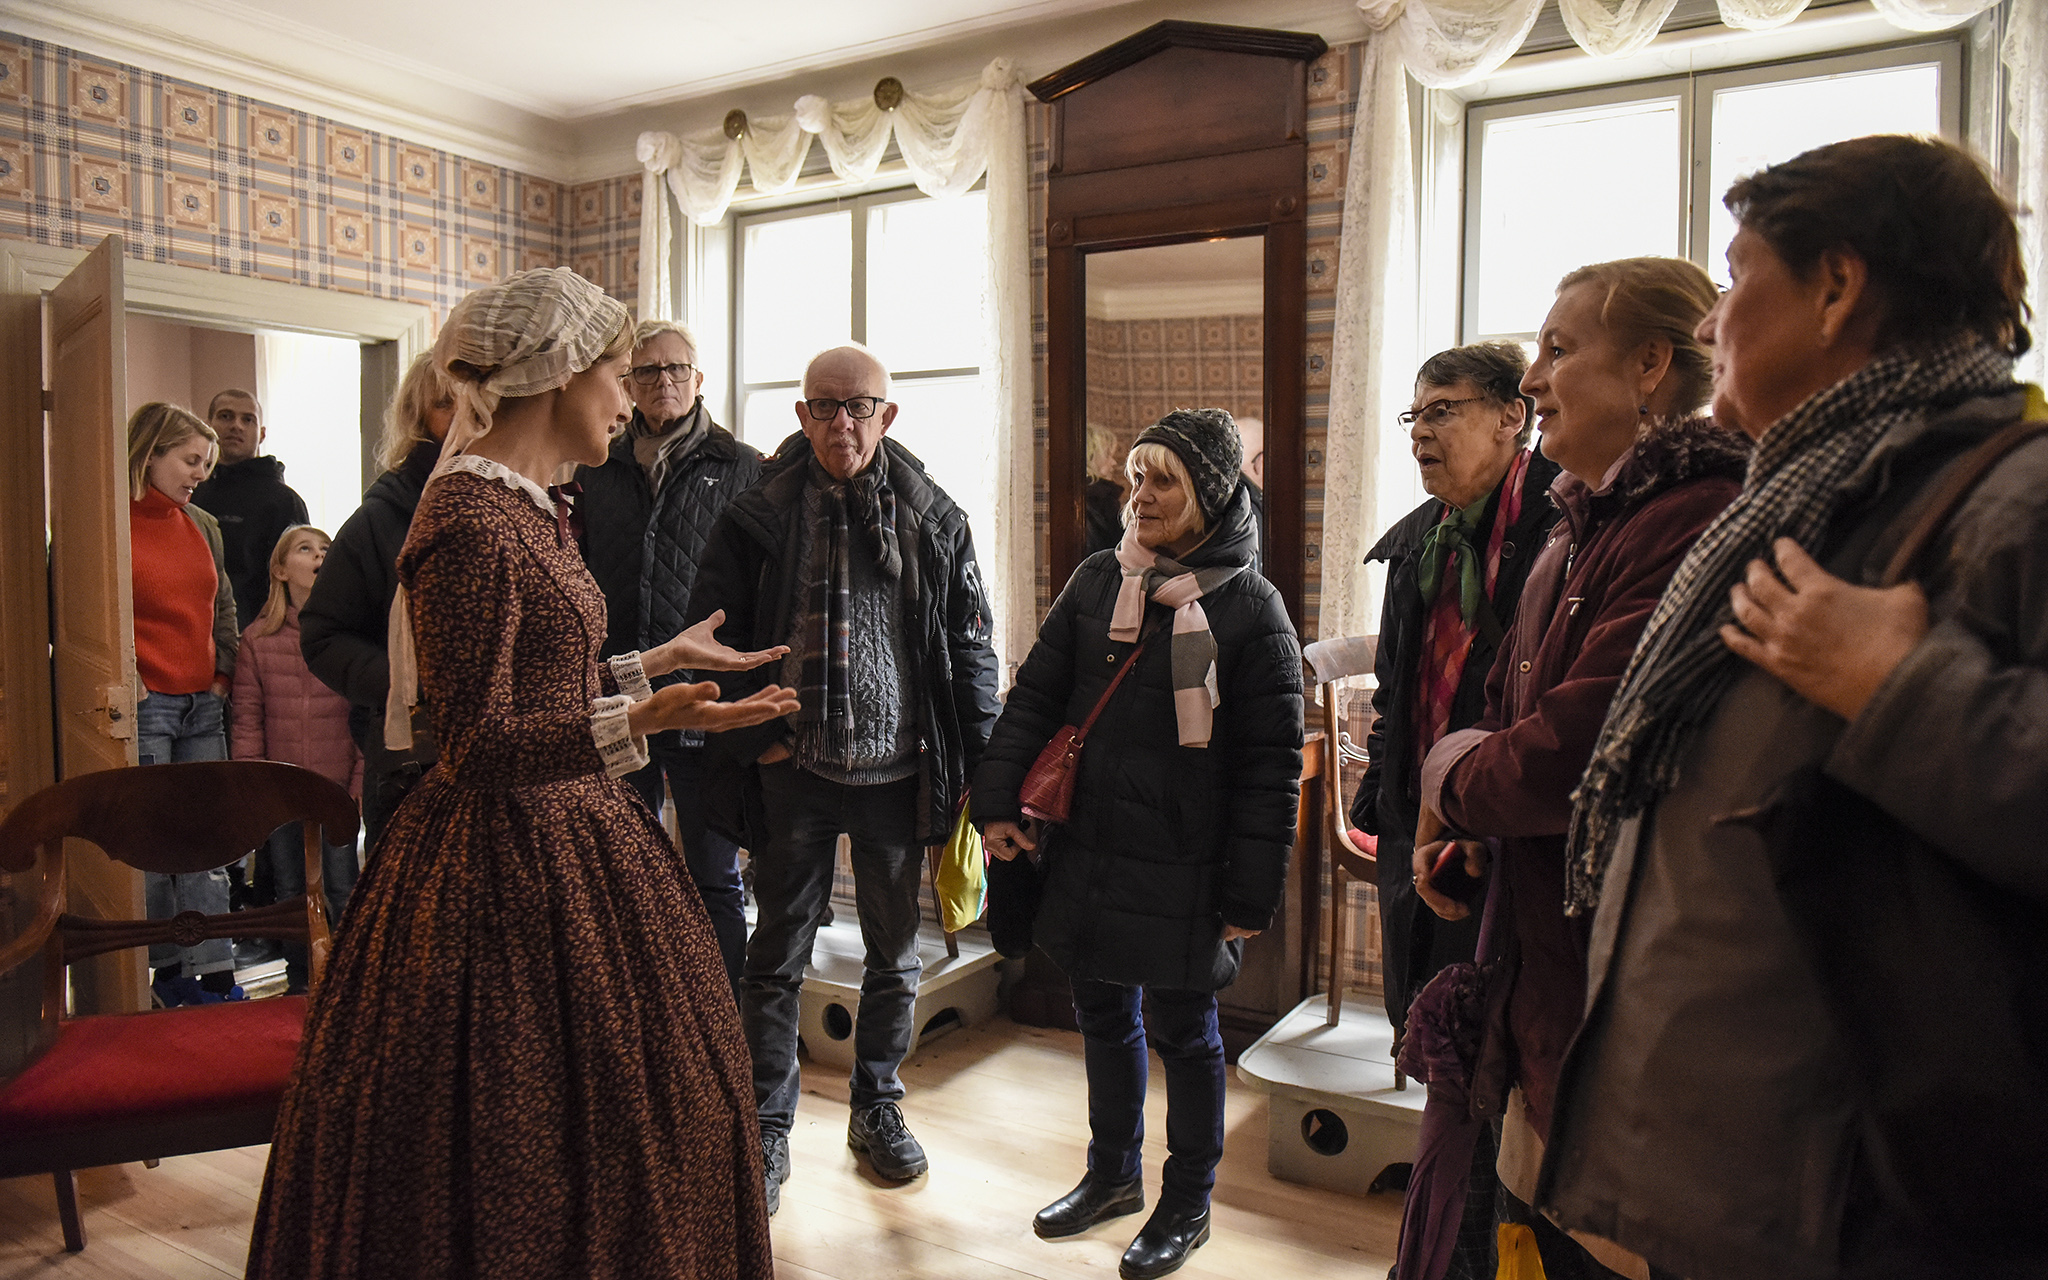 Visning i Thomanderska huset på Kulturen i Lund. Foto: Viveca Ohlsson, Kulturen